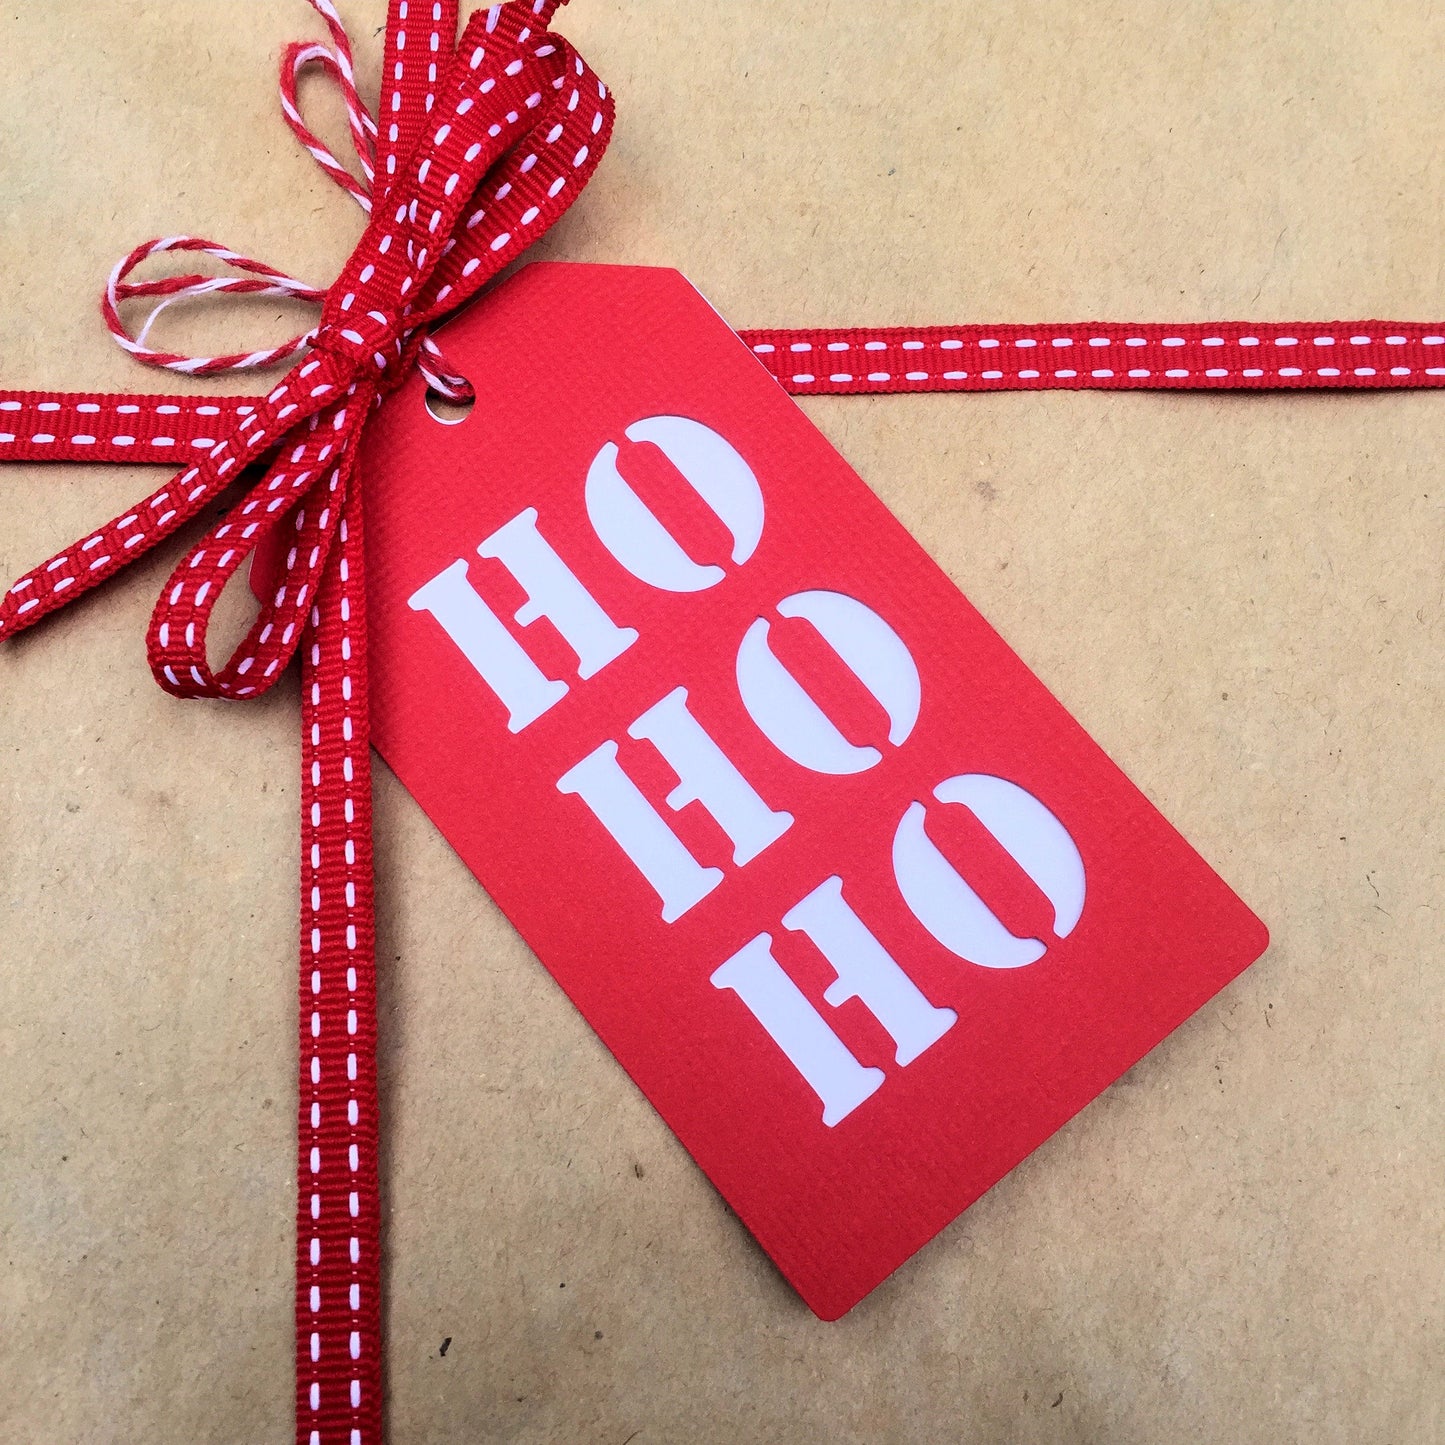 Christmas HO HO HO gift tags.